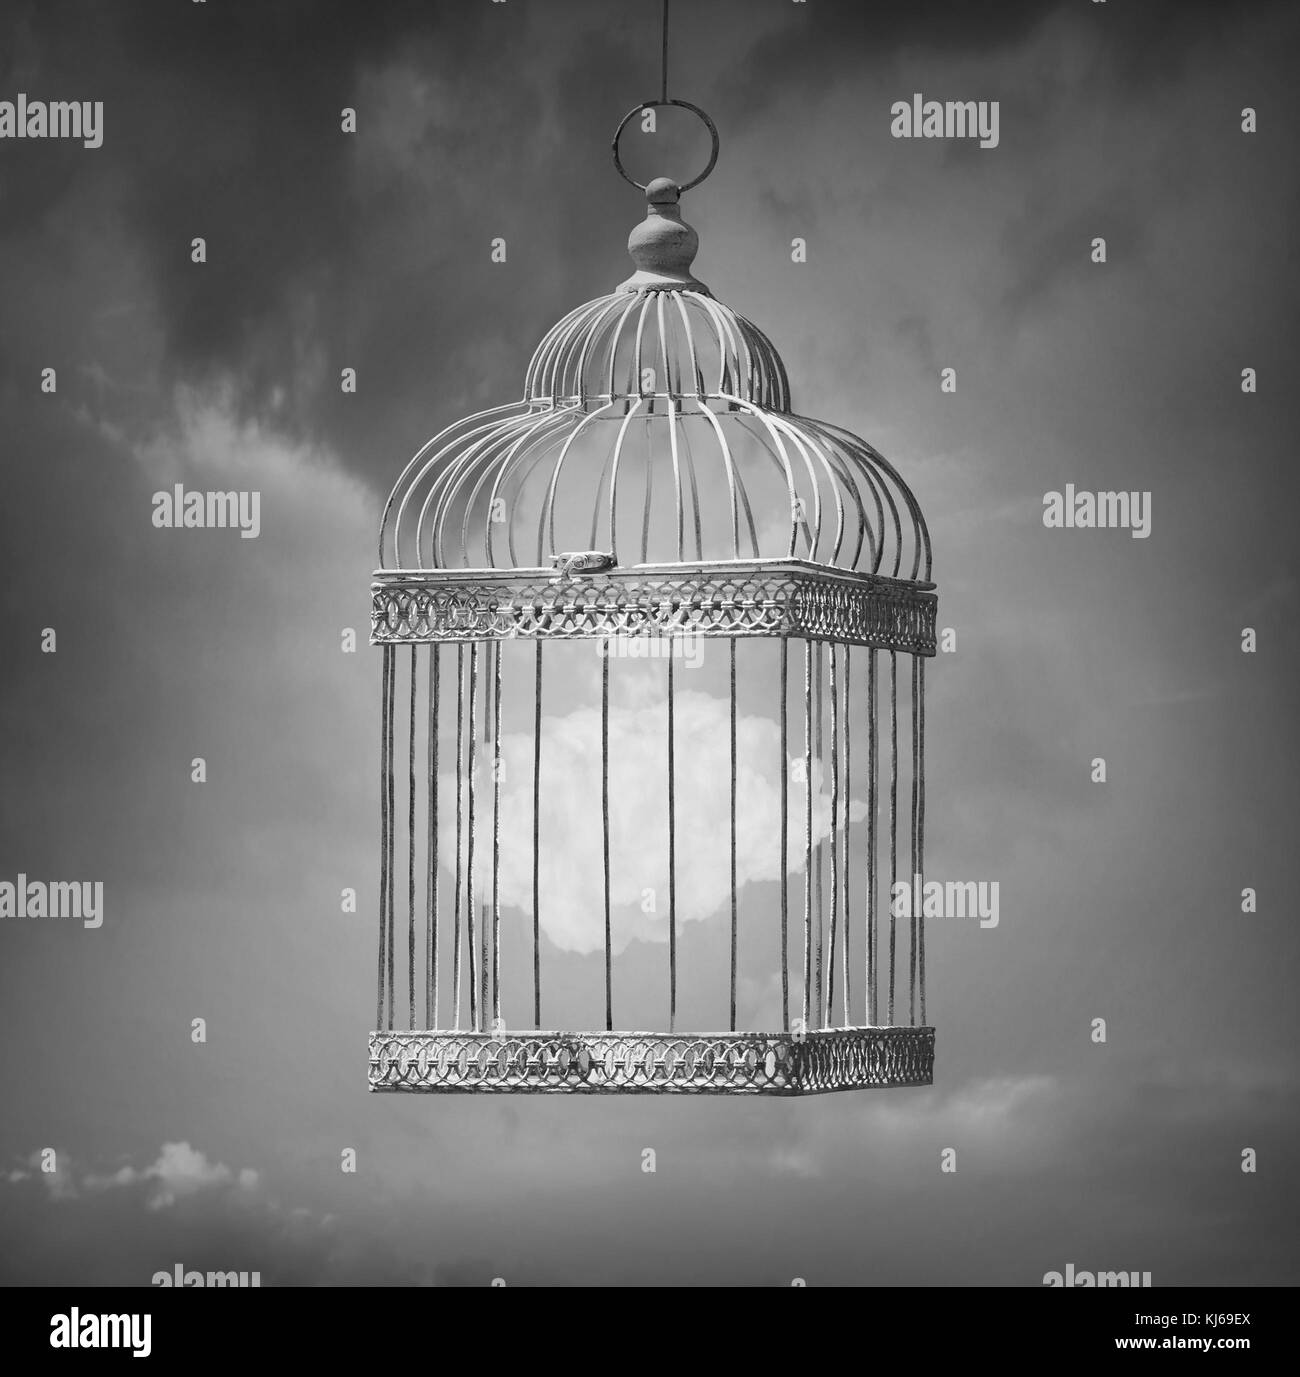 Image de rêve en noir et blanc qui représentent un nuage dans une cage Banque D'Images